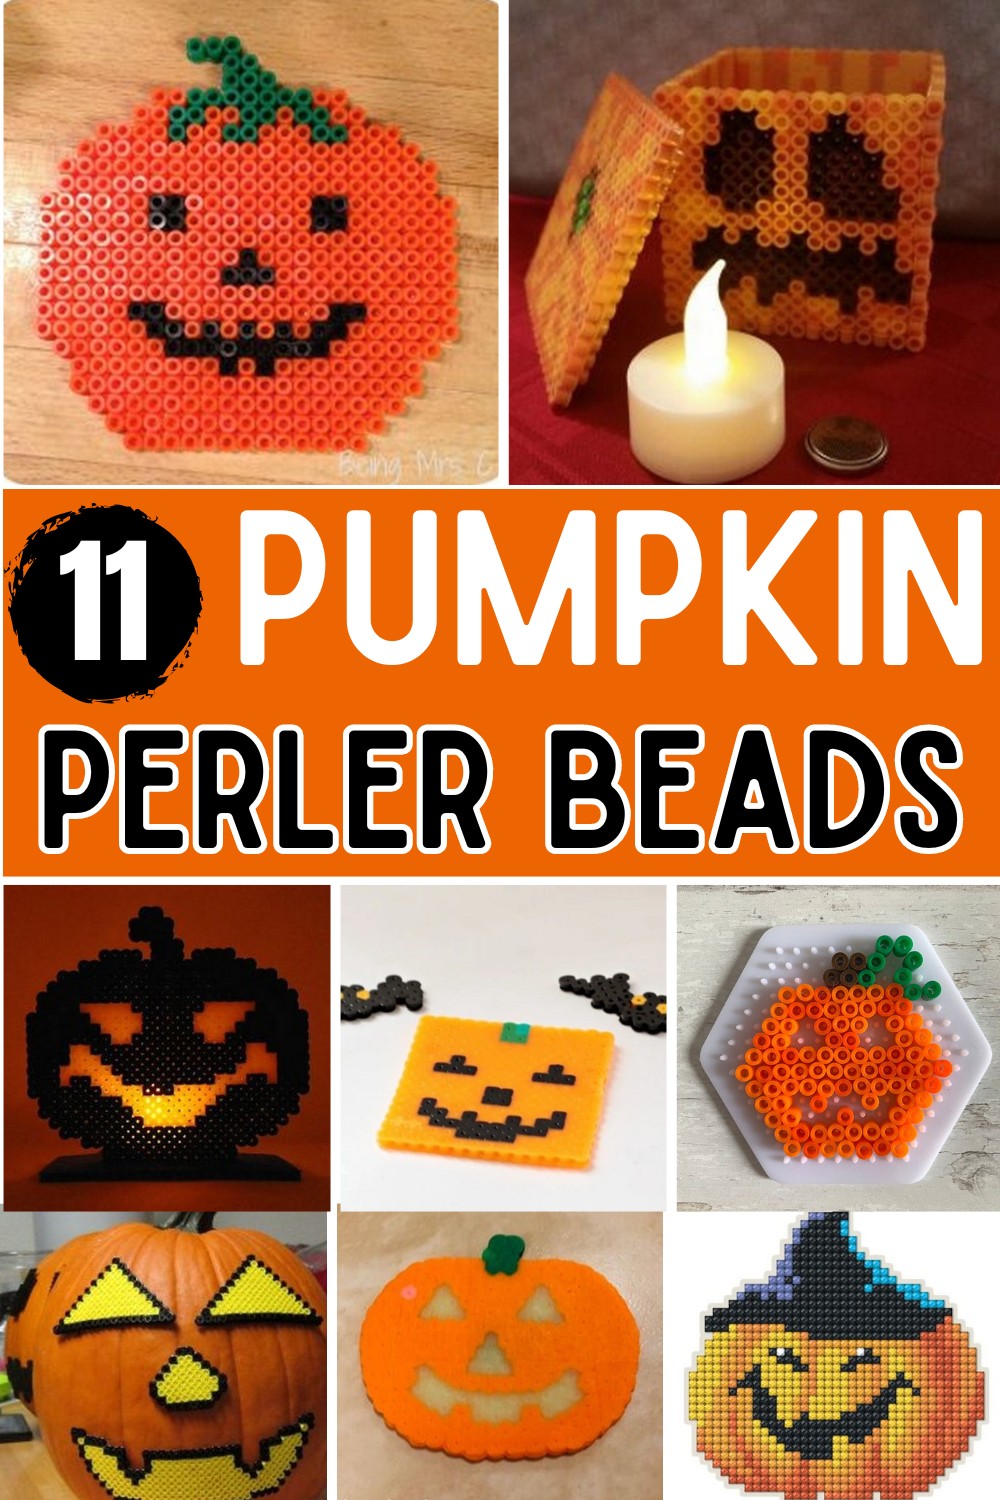 Pumpkin Perler Bead Patterns